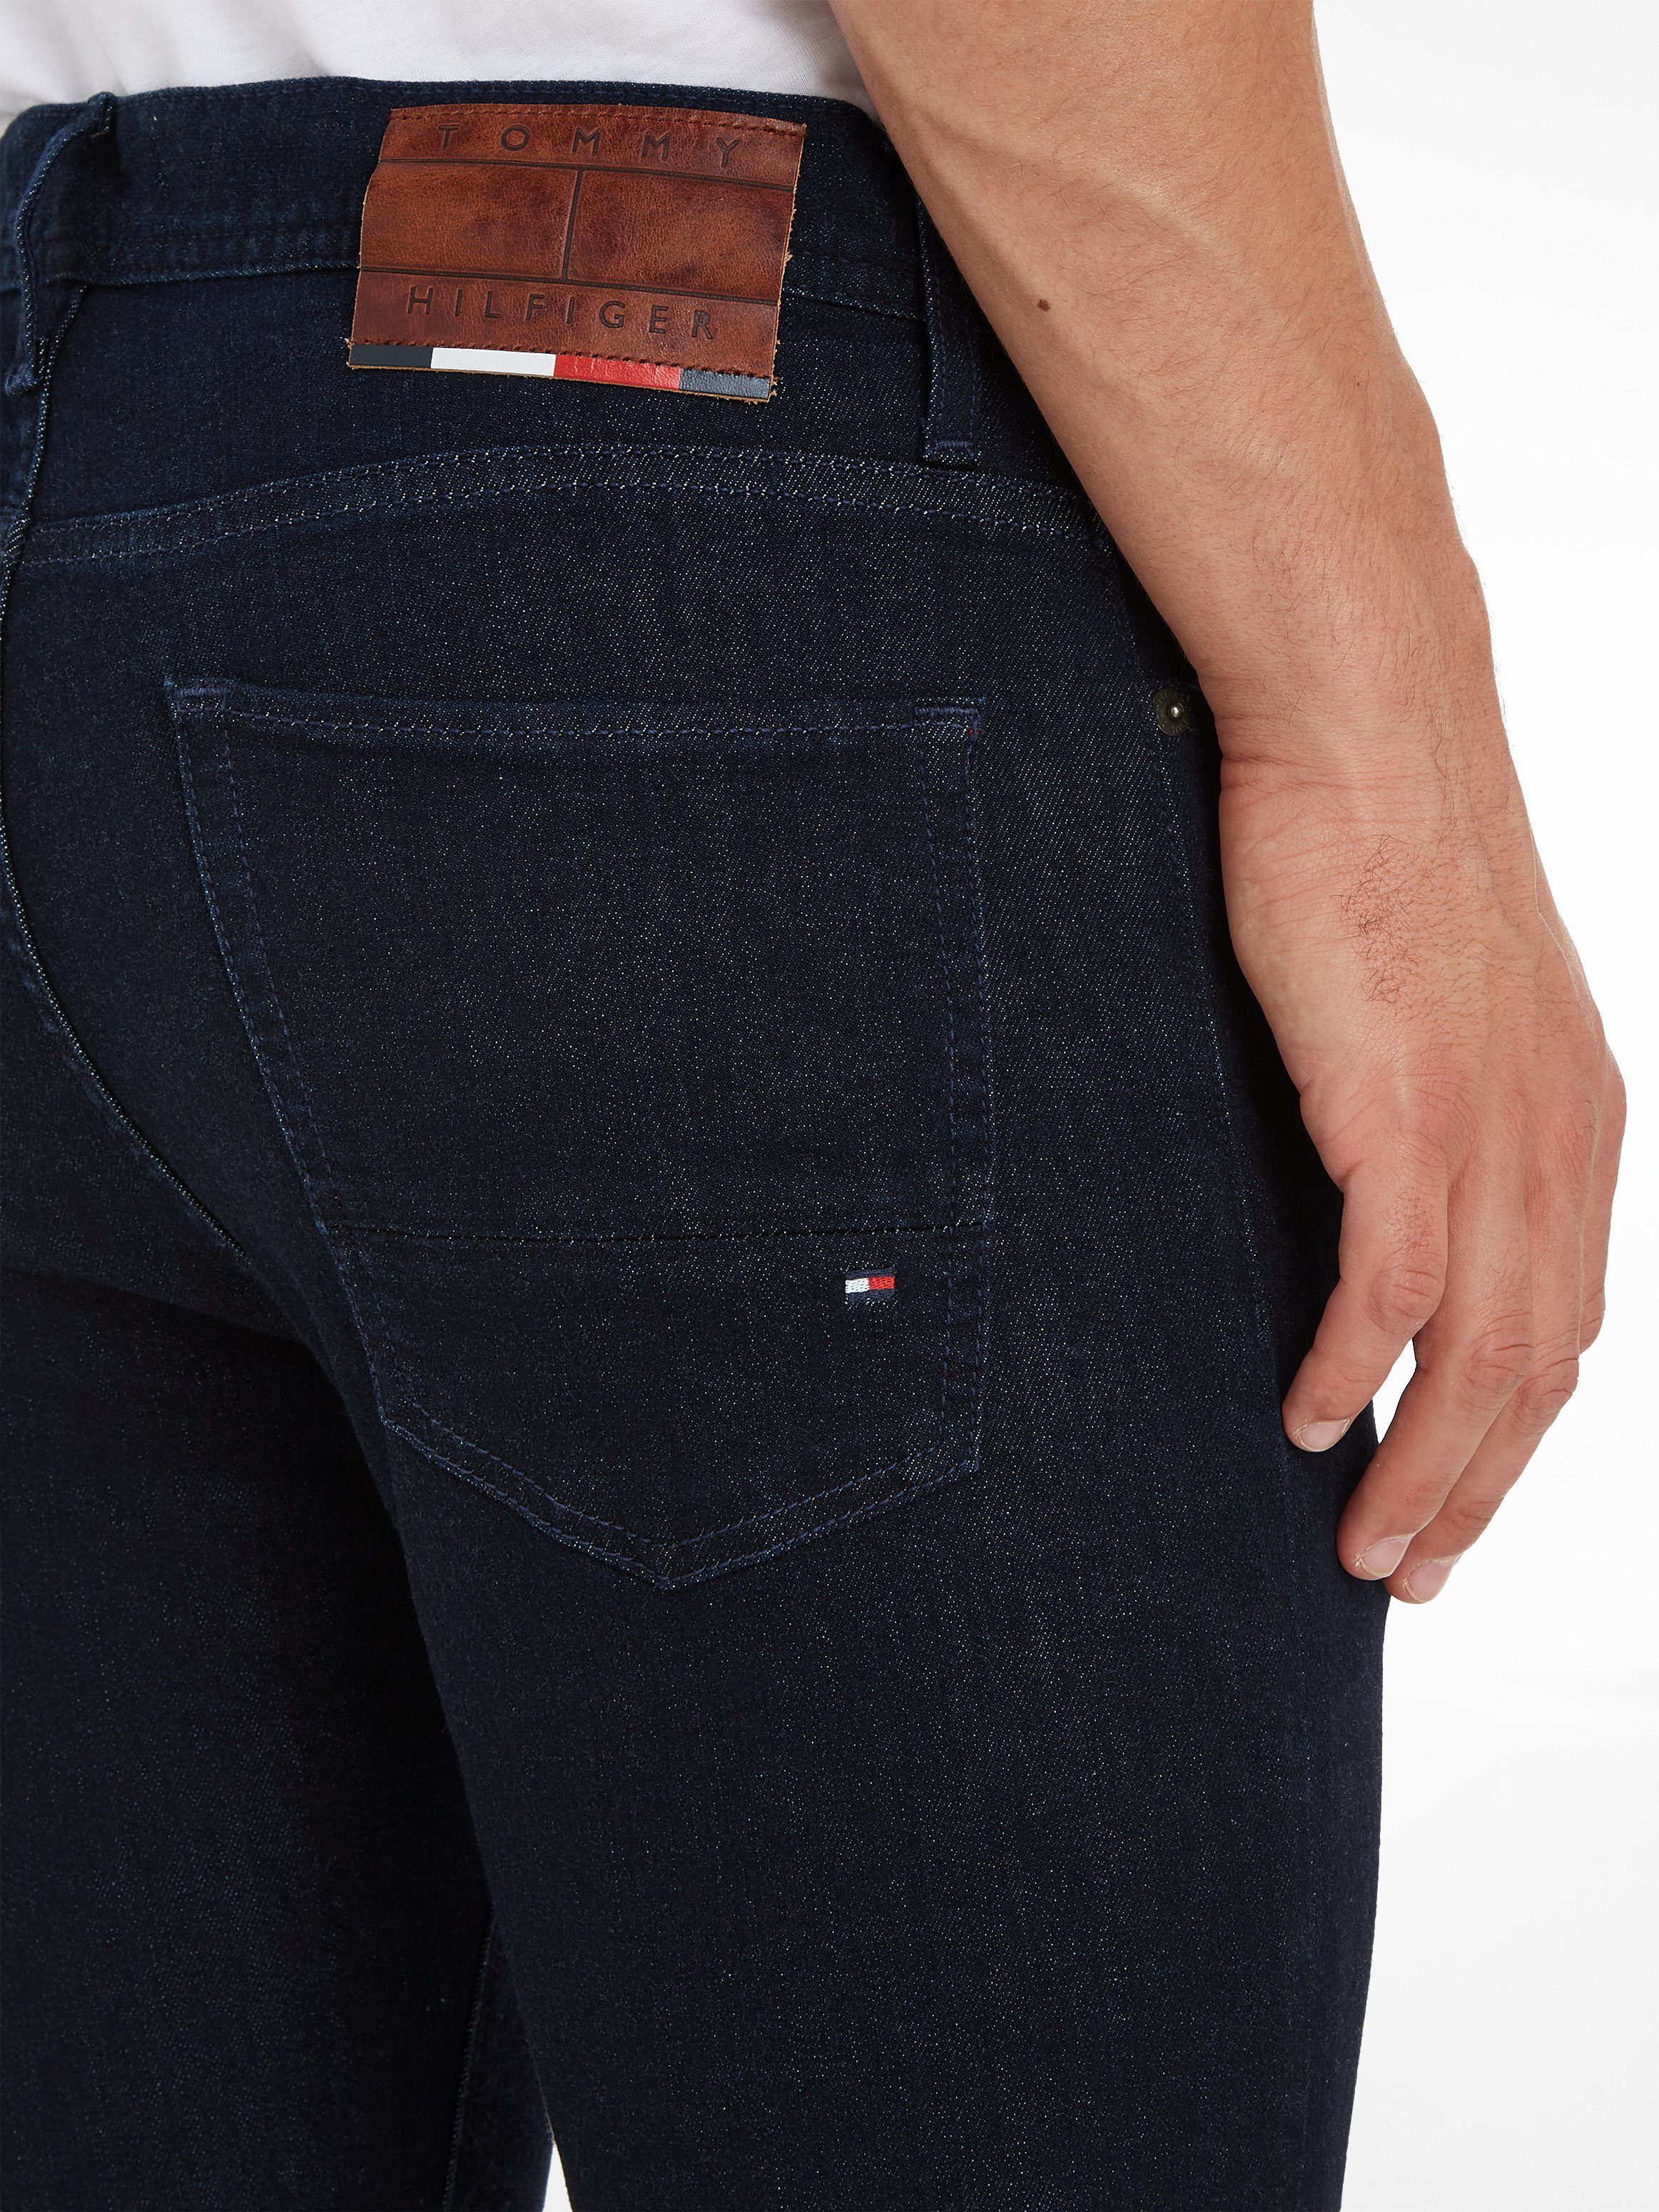 OTTO snel fit online jeans Hilfiger Bleecker | gekocht Slim Tommy